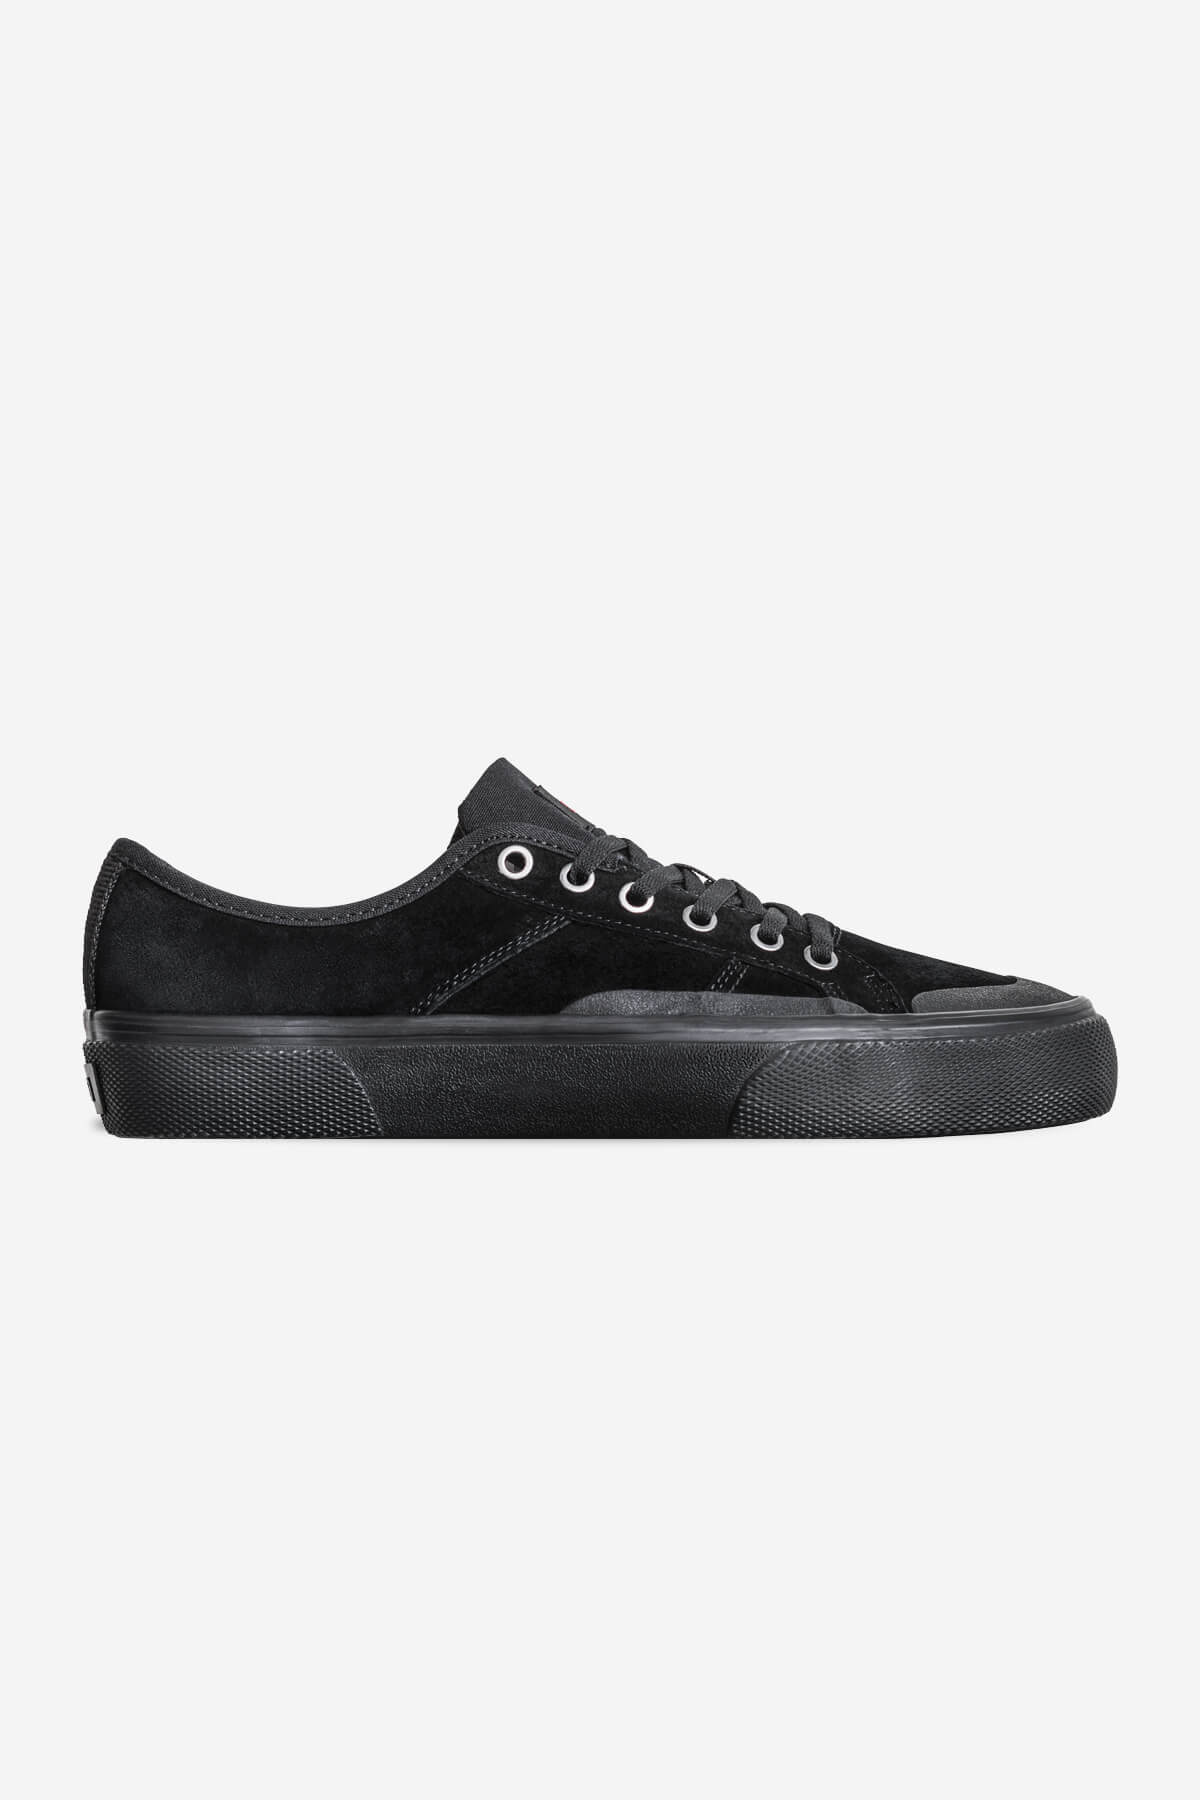 surplus noir noir wolverine skateboard chaussures